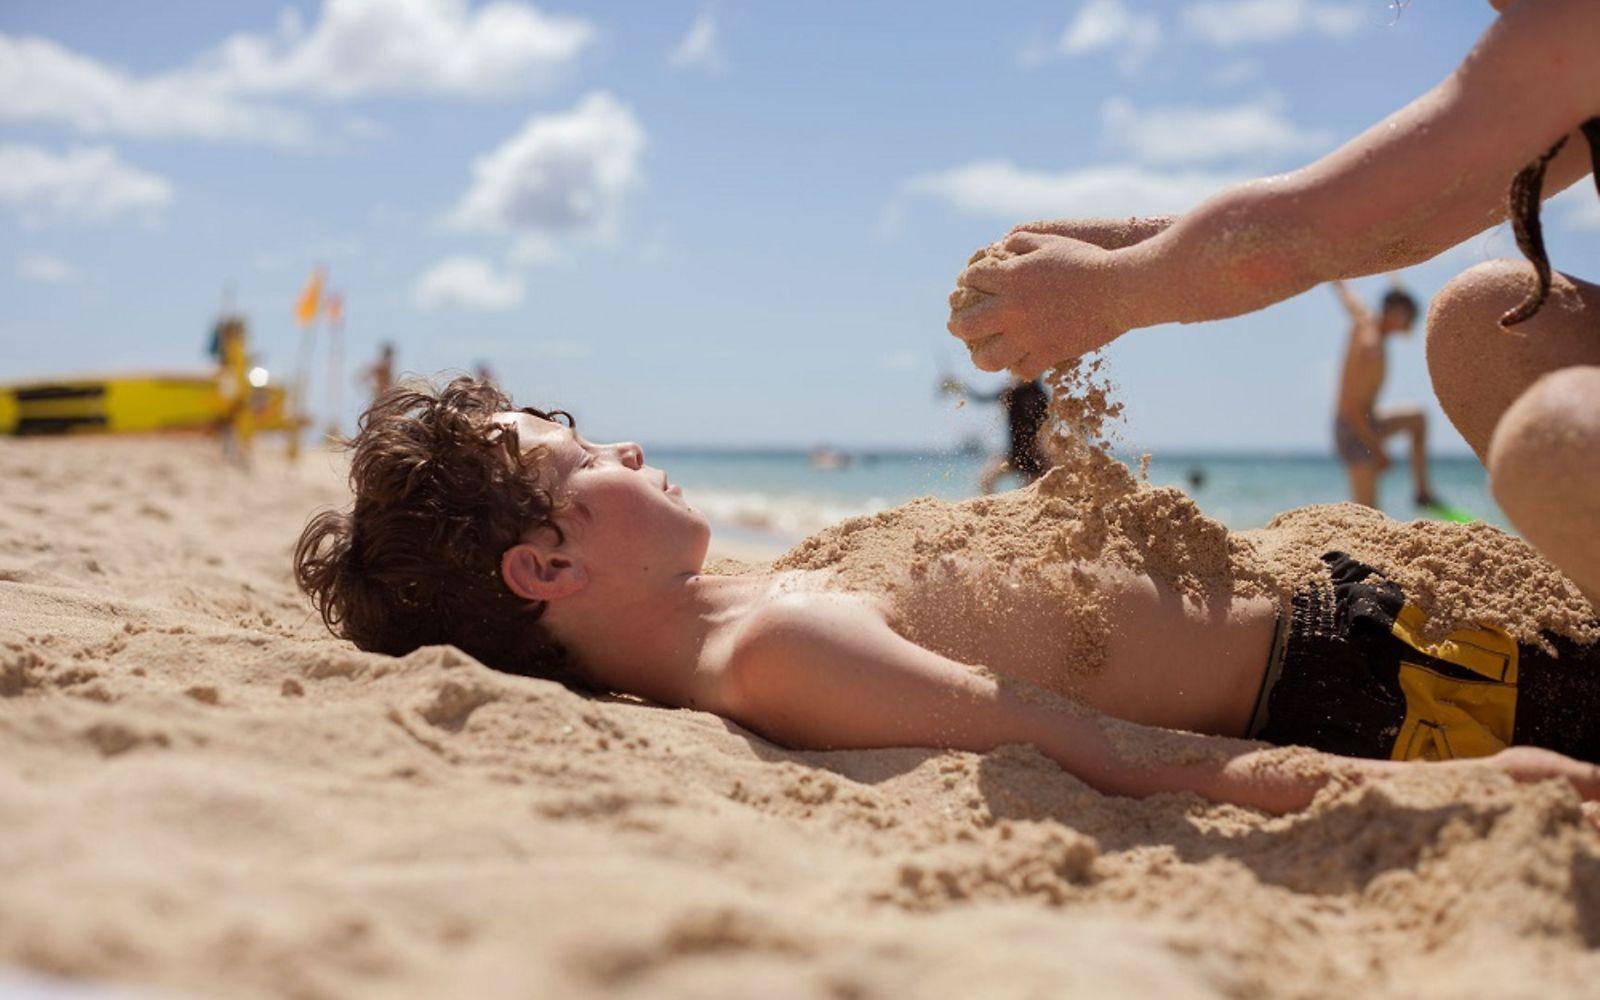 Sonnenbrand: Junge liegt am Strand in Badeshorts und wird mit Sand bestreut.